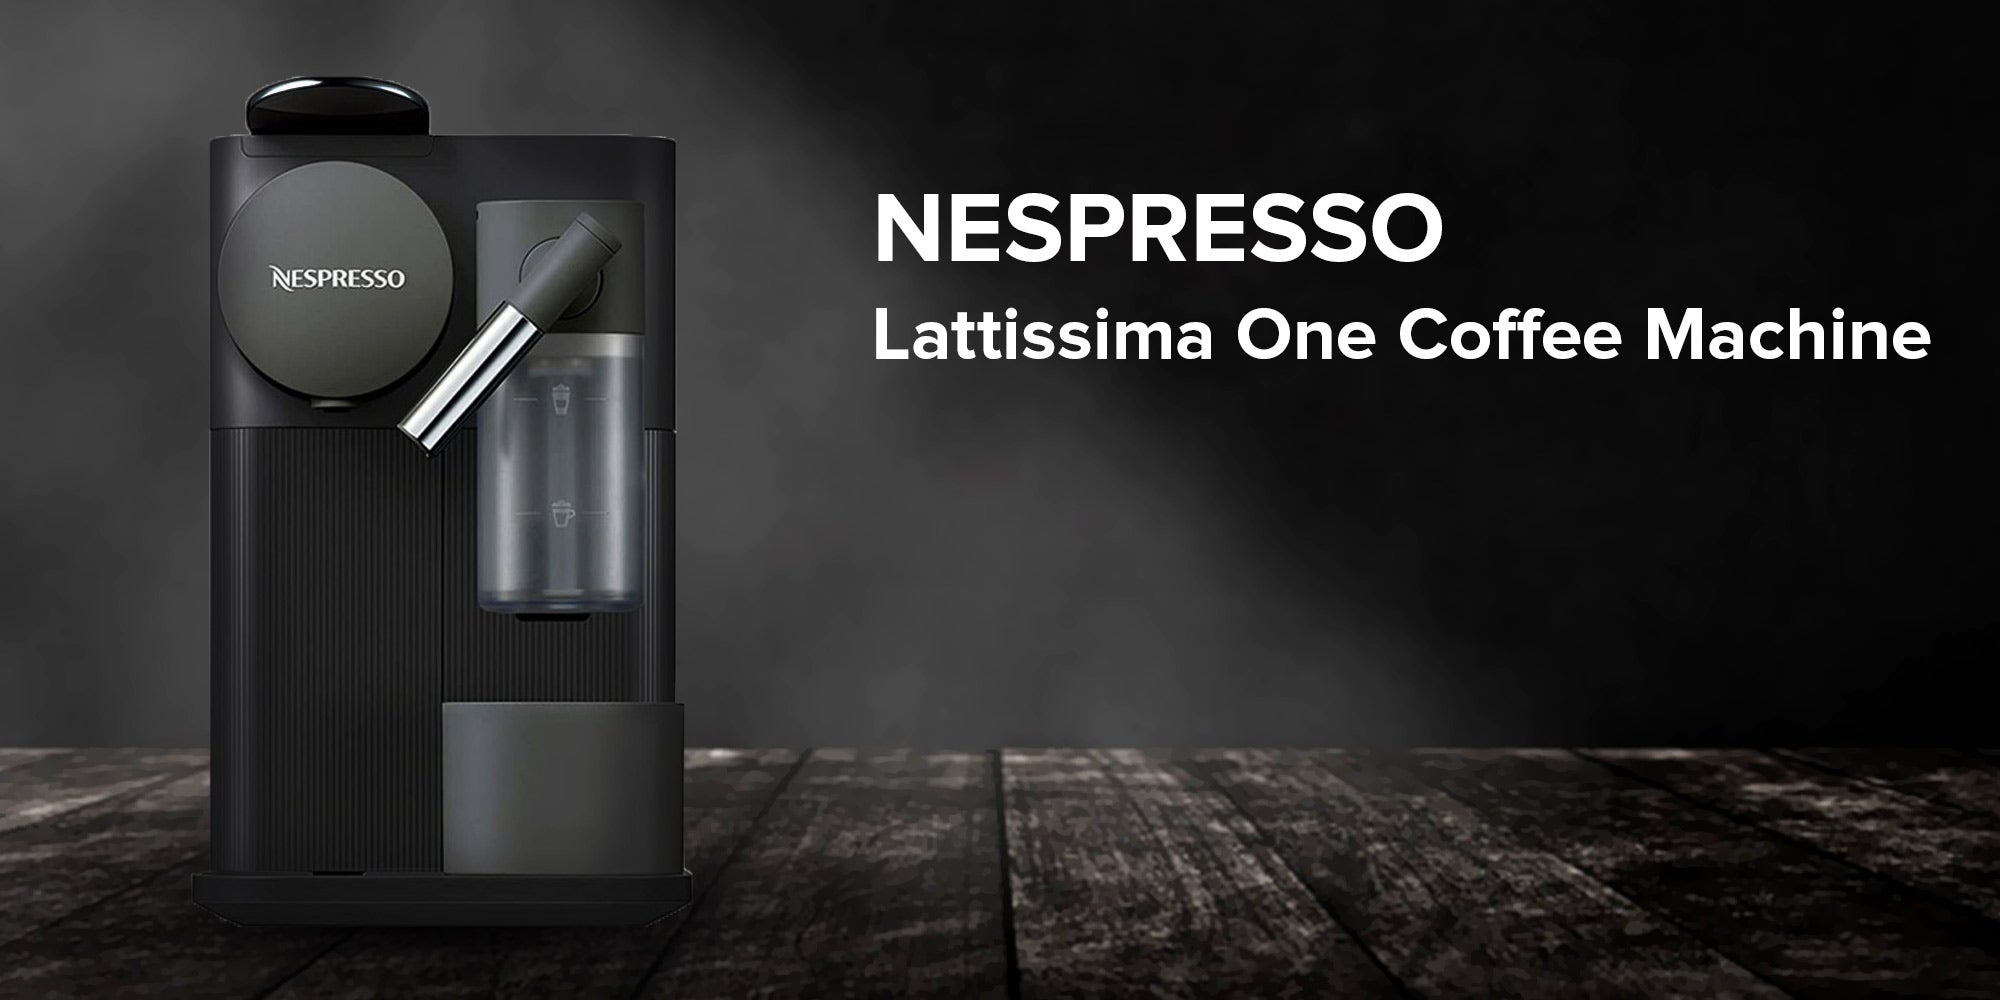 NESPRESSO Lattissima One Espresso/Coffee Machine 1.0 L 1450.0 W